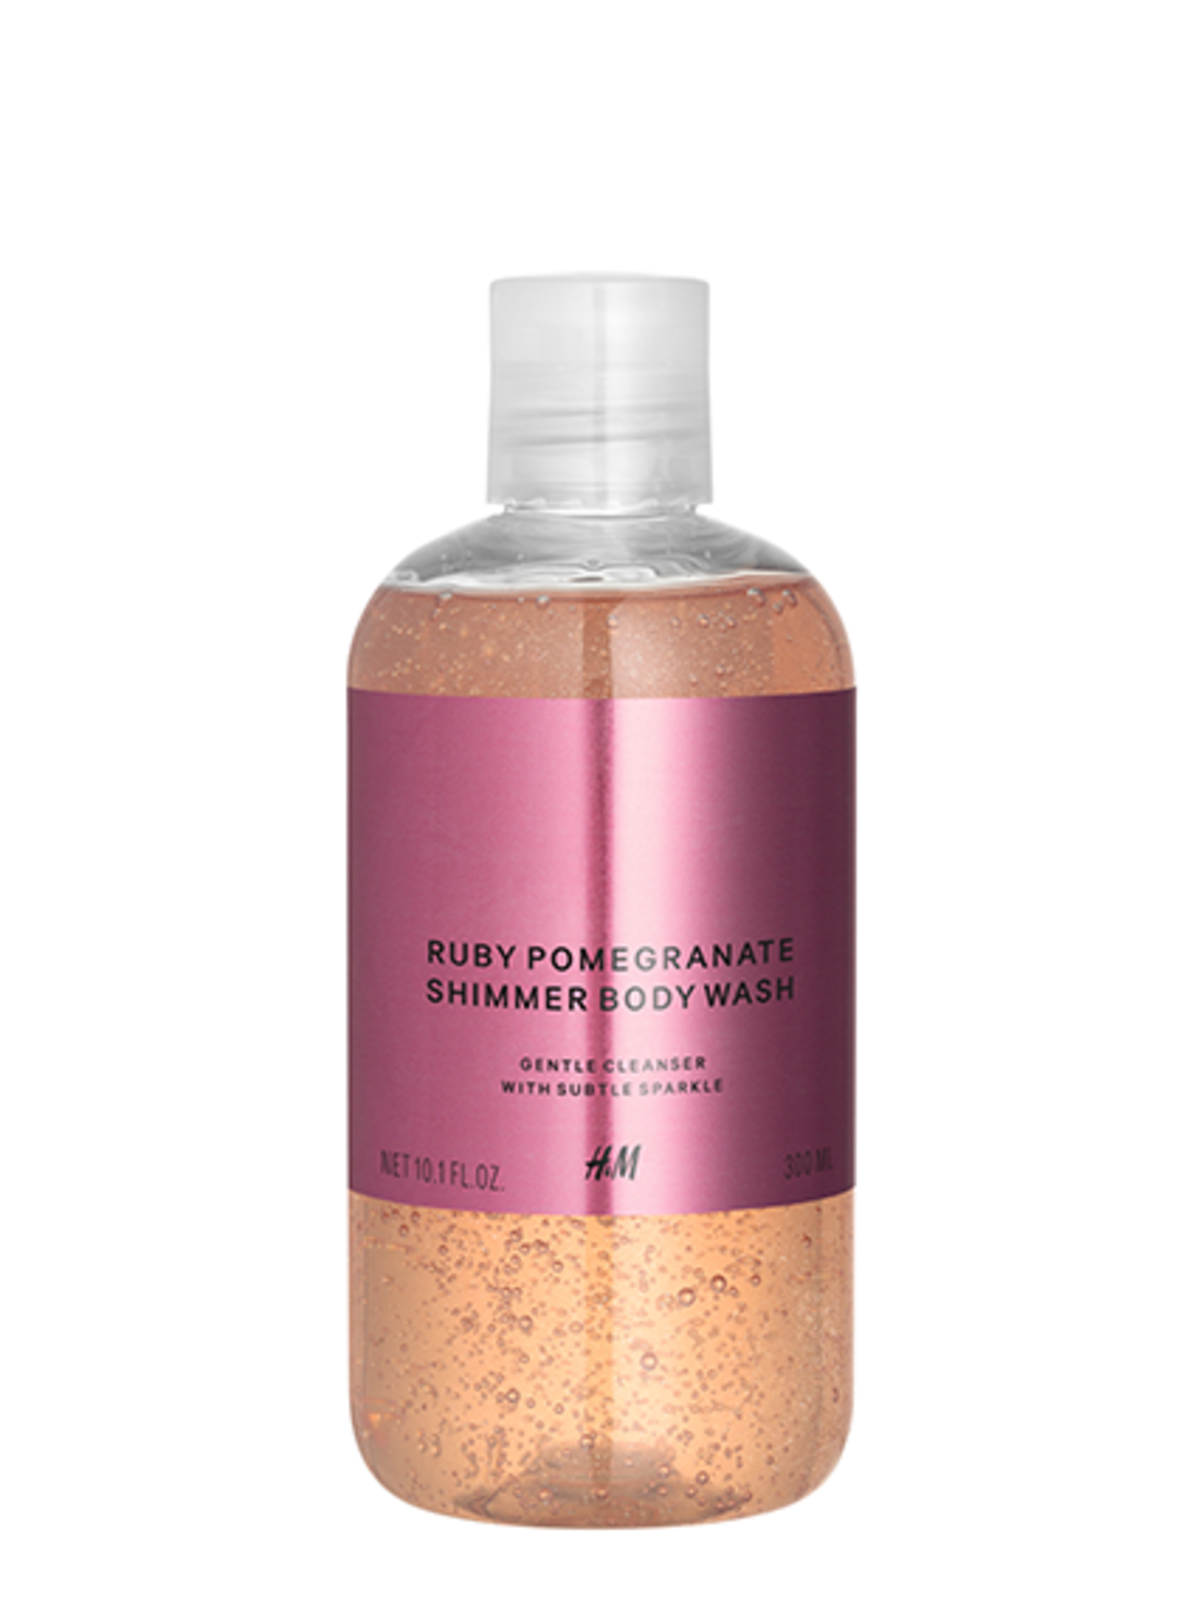 H&M Shimmer Body Wash o zapachu Ruby Pomegranate